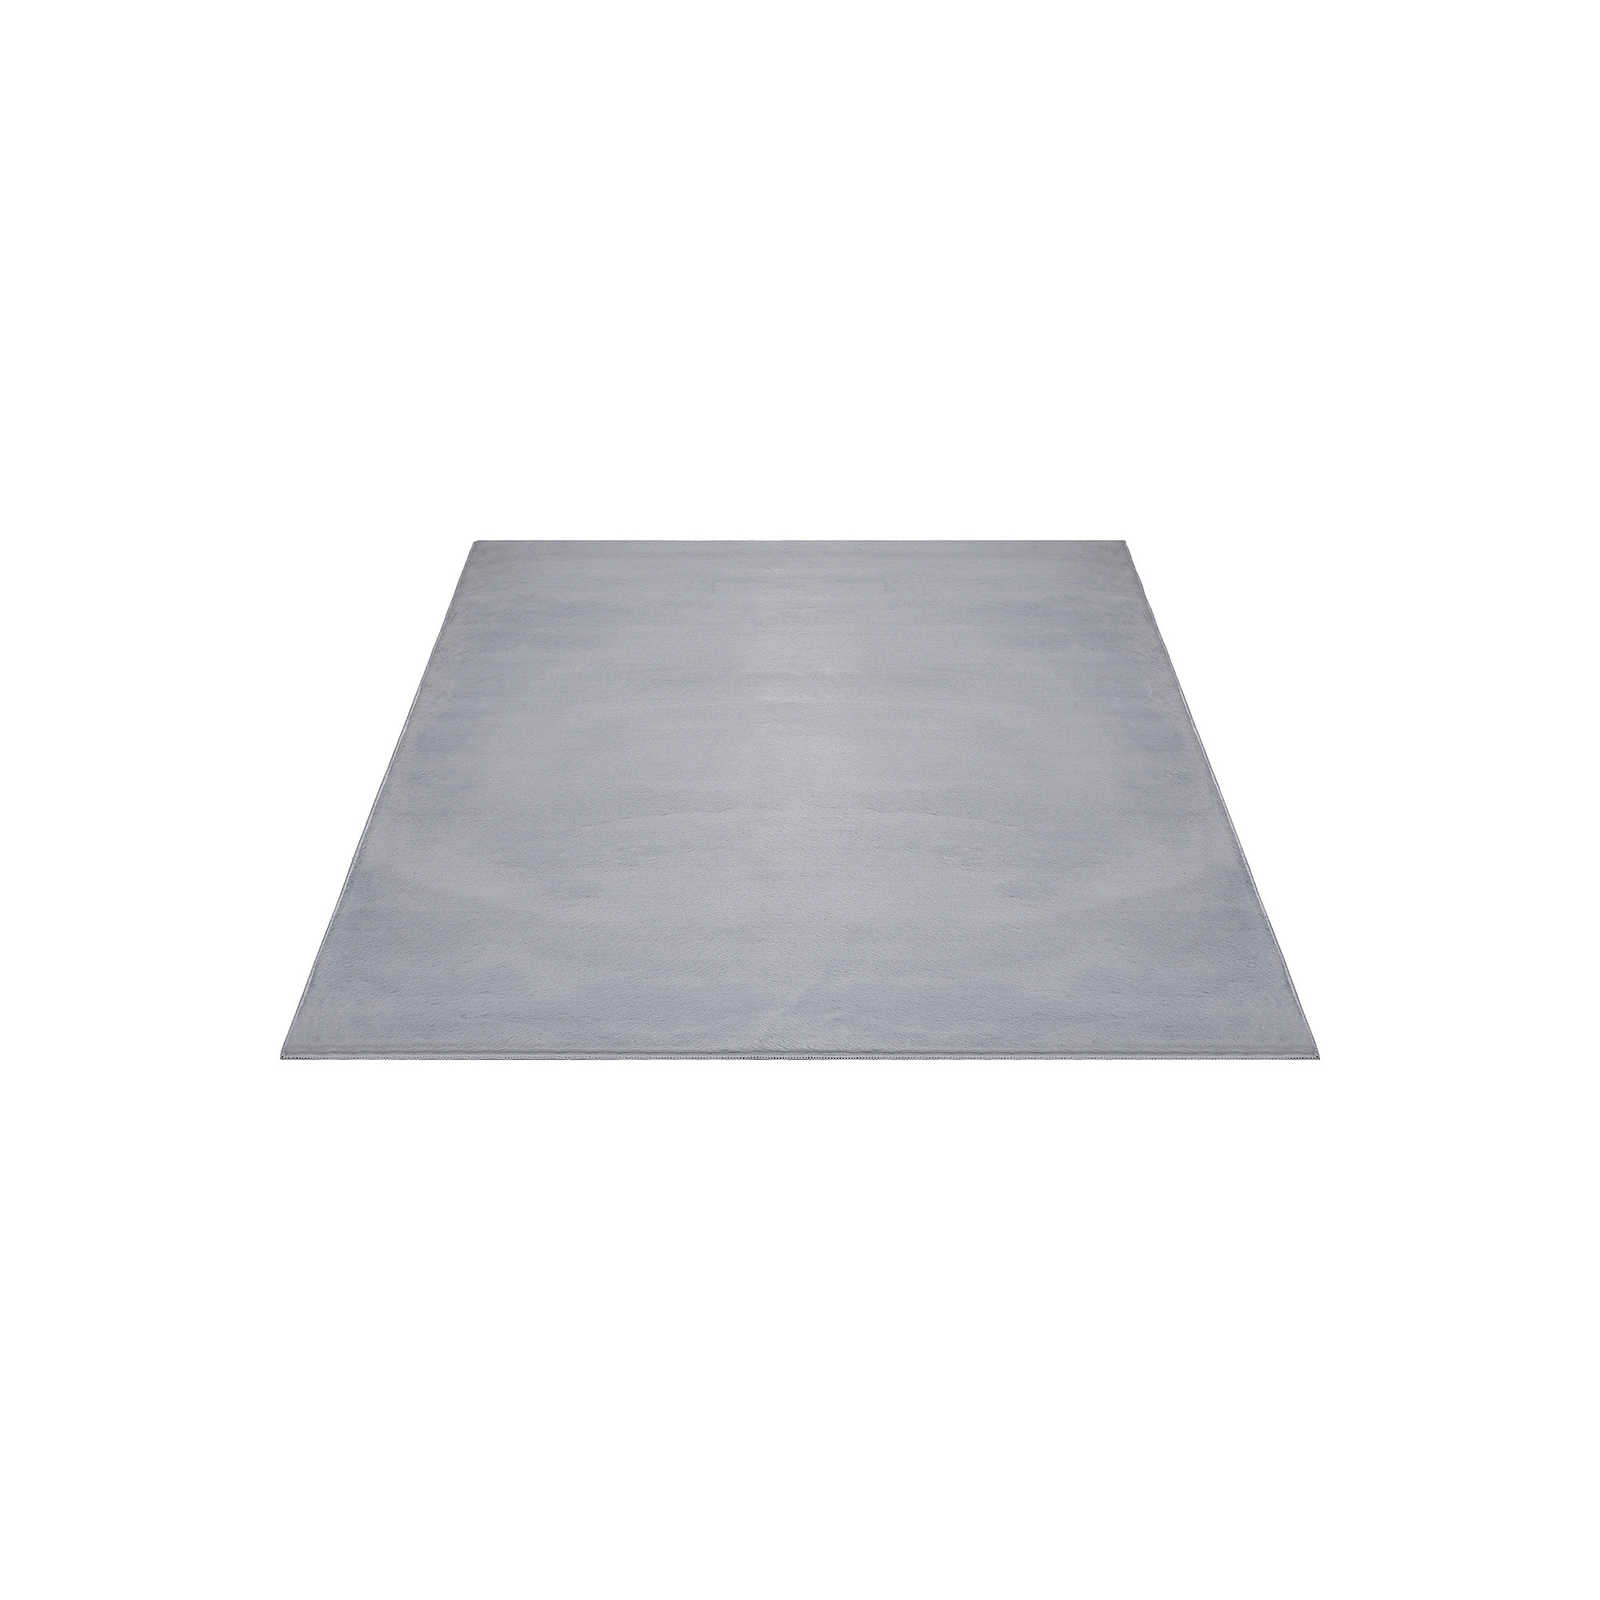 Confortevole tappeto a pelo alto in morbido grigio - 220 x 160 cm
